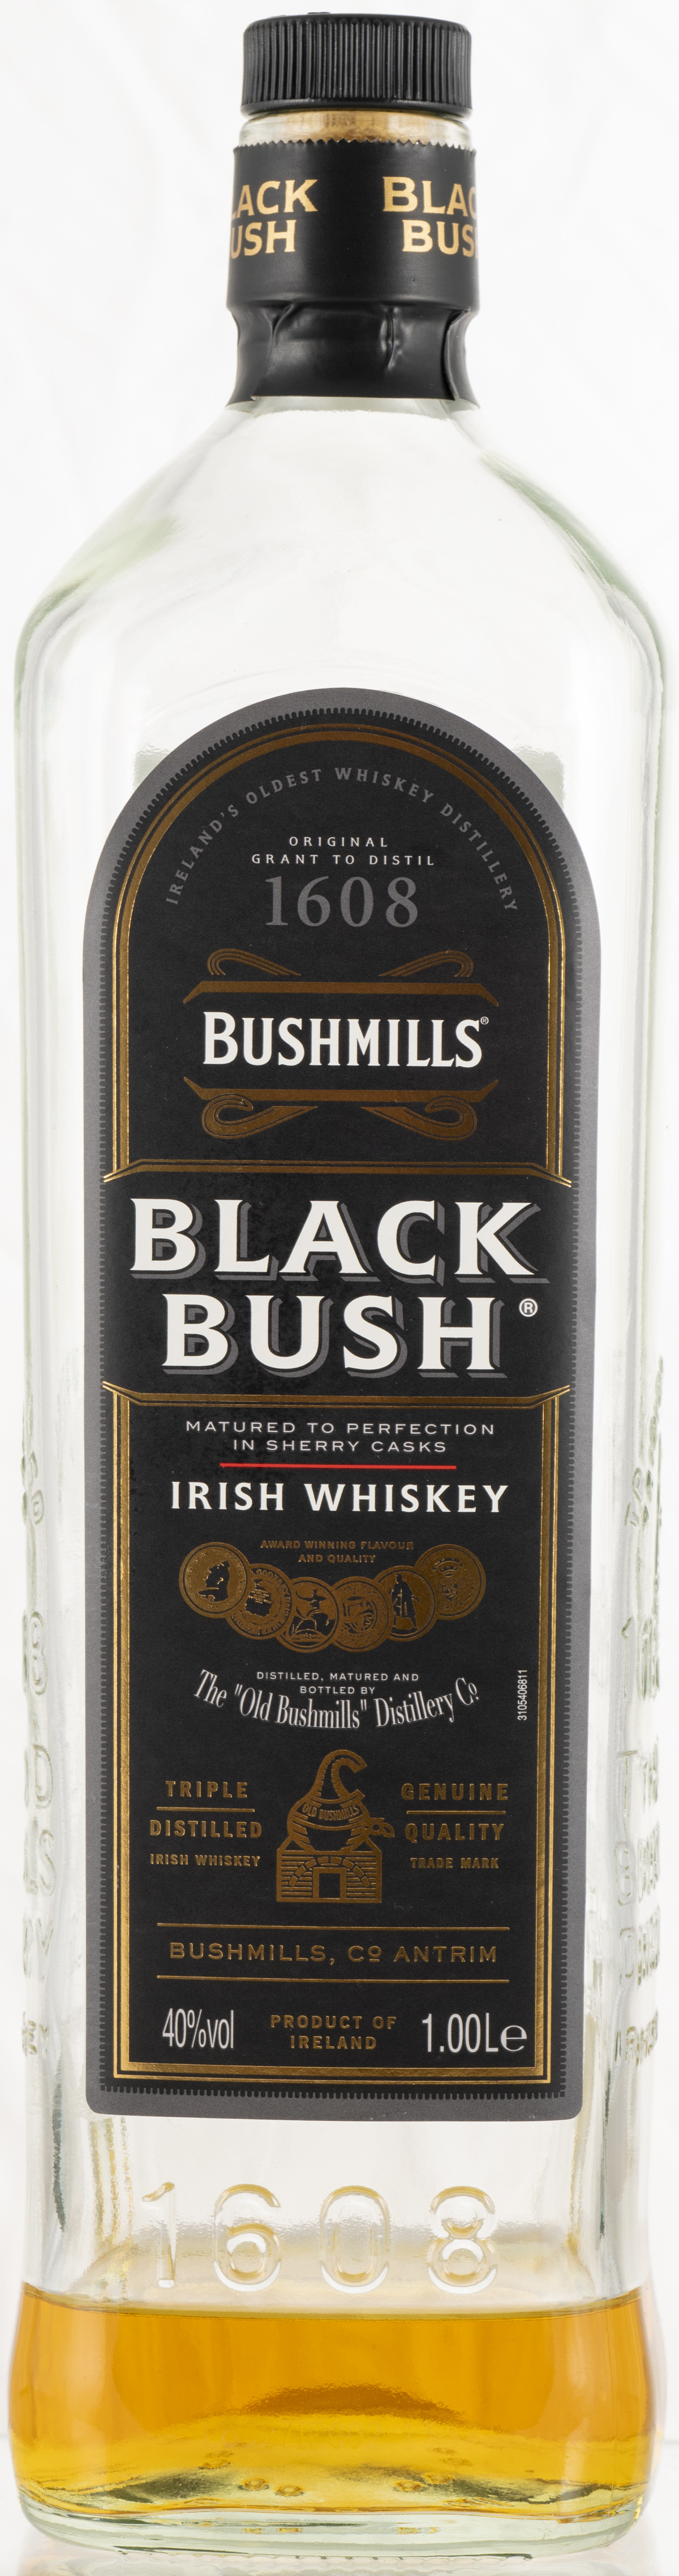 Billede: PHC_4096 - Bushmills Black Bush - bottle front.jpg